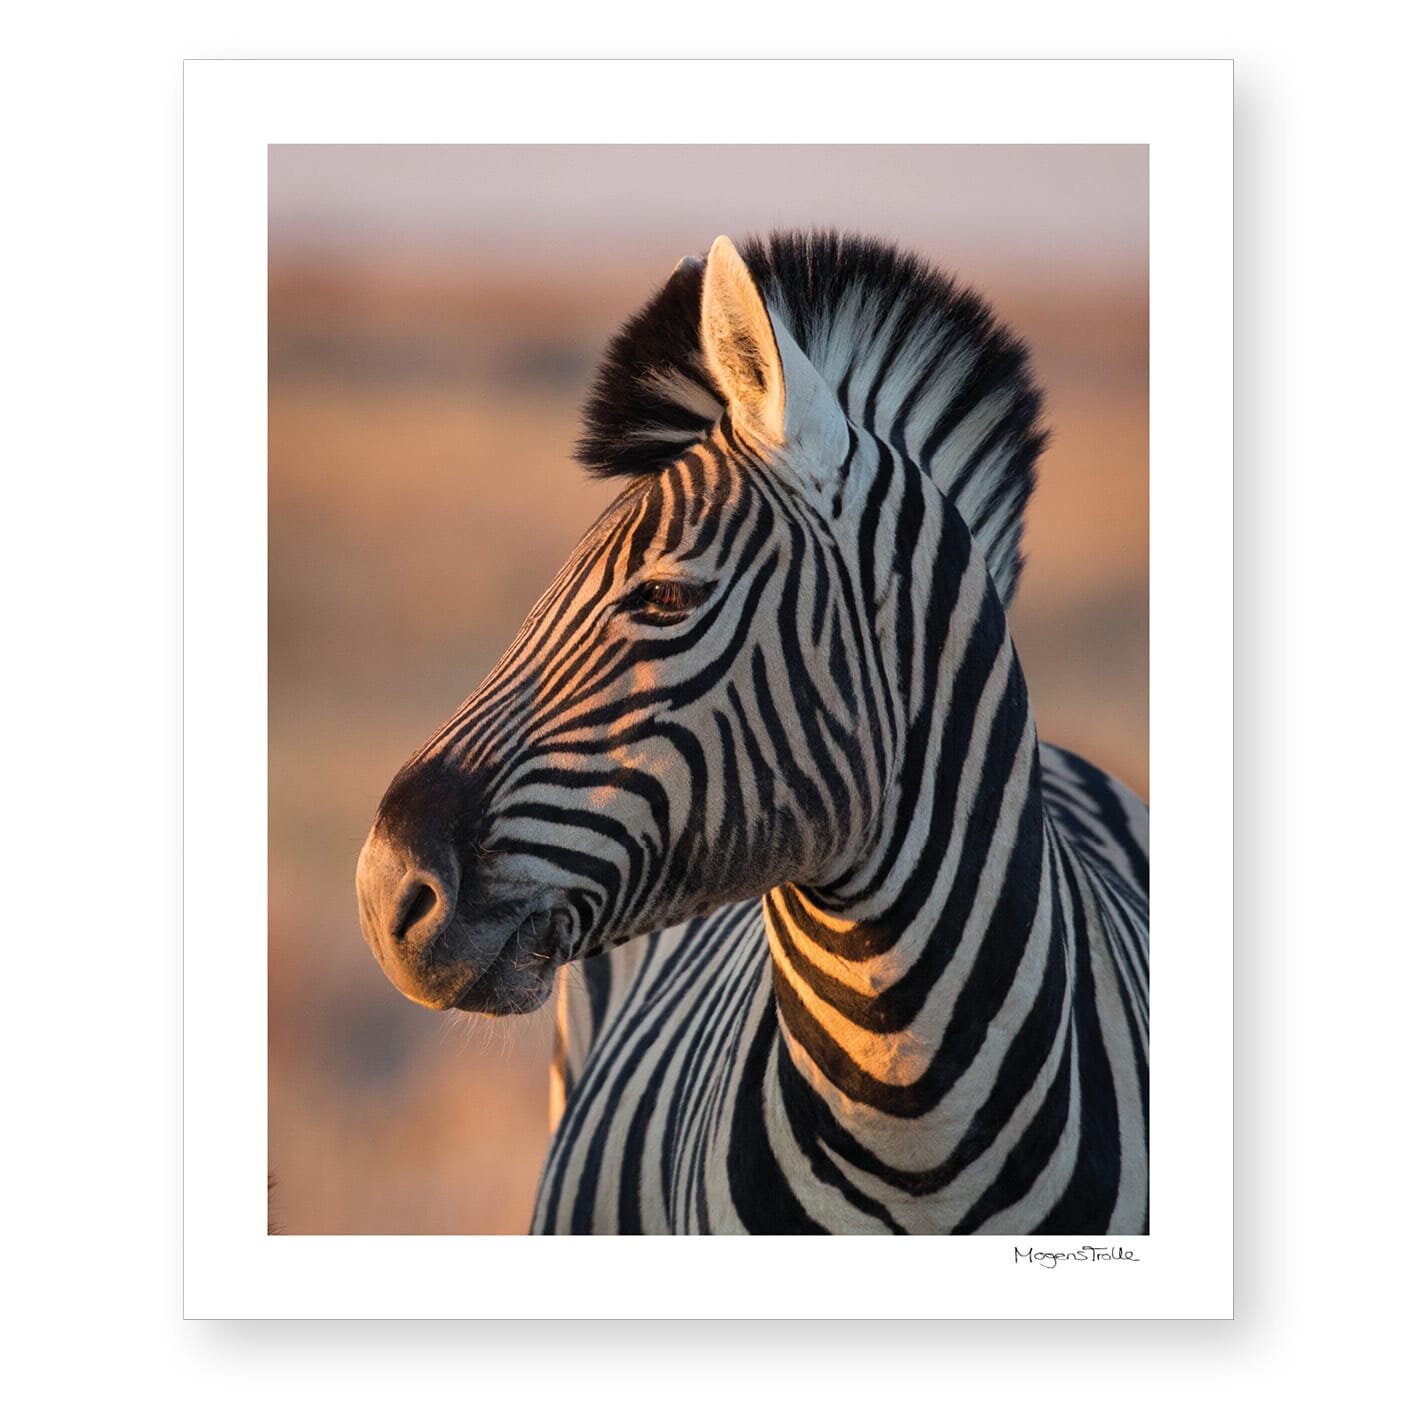 Zebra stallion in sunset light